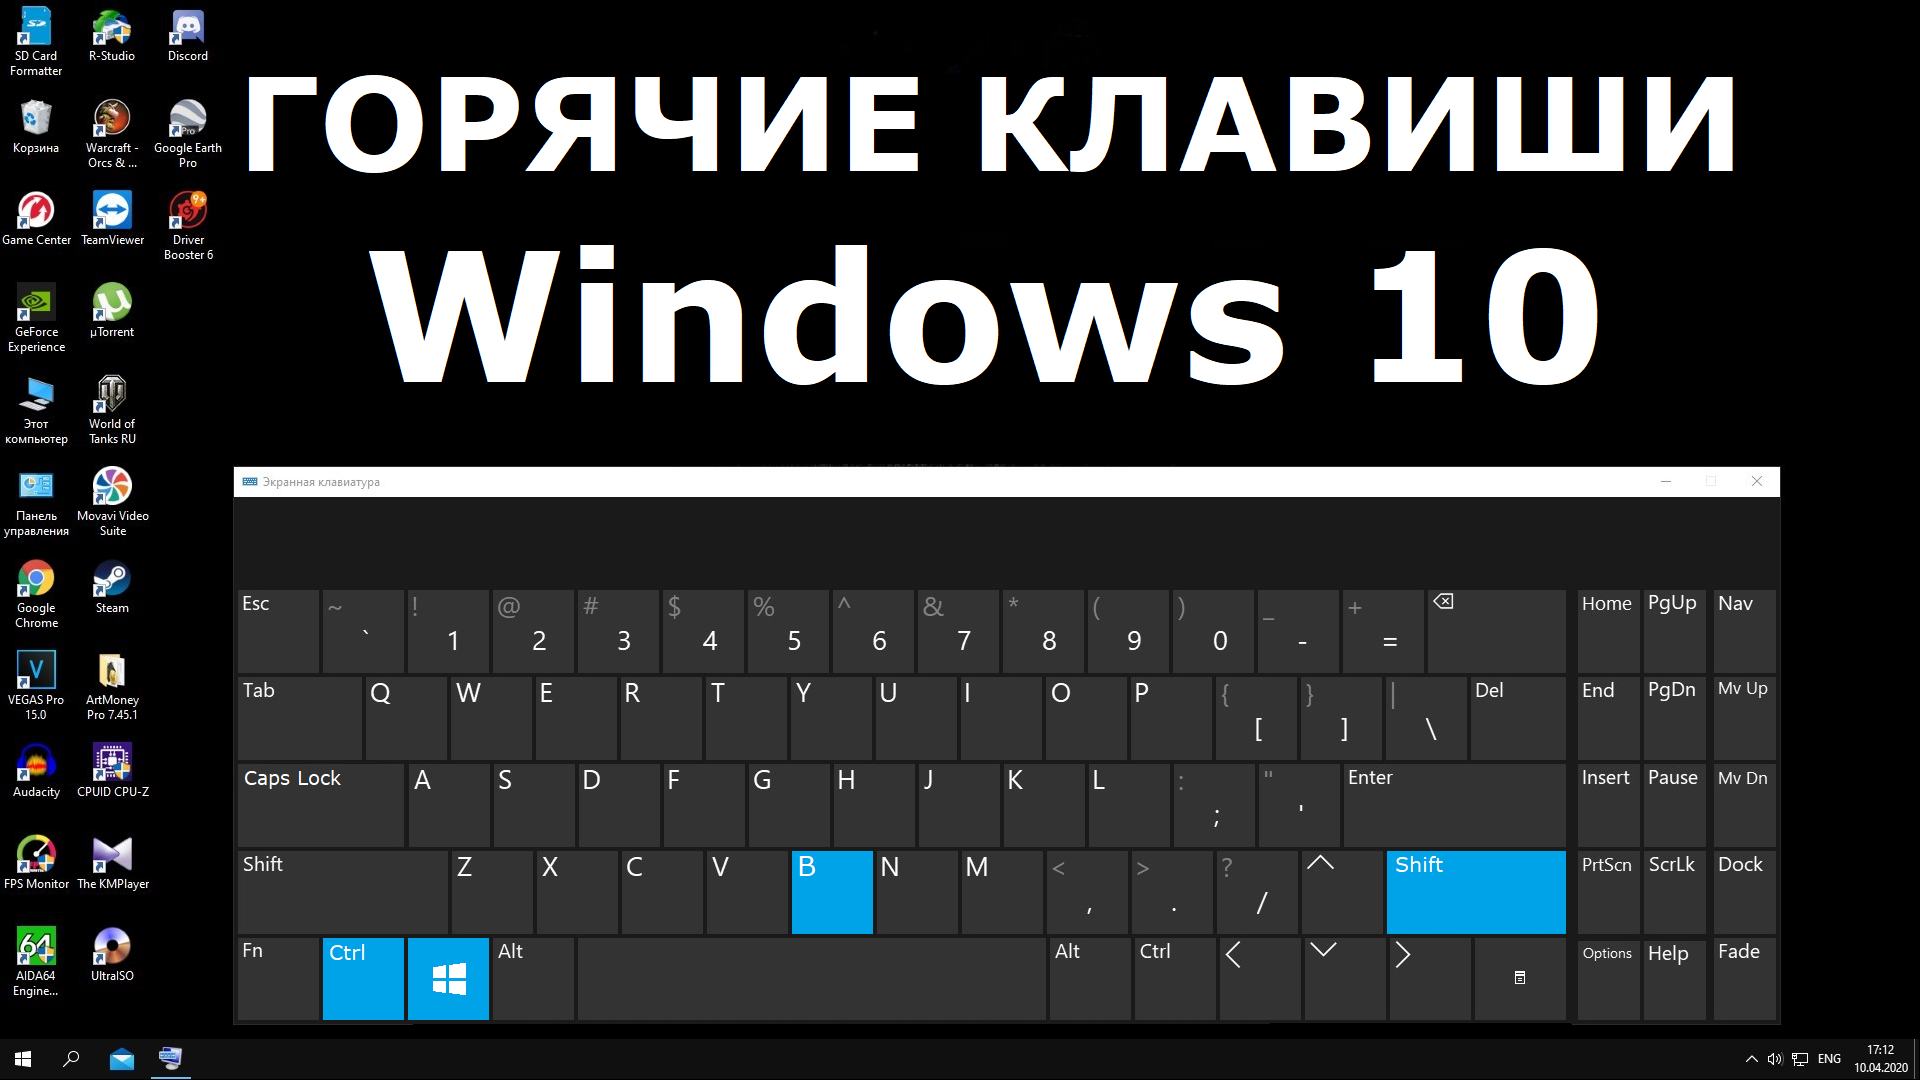 Нажми windows клавиши windows. Горячие клавиши. Windows. Горячие клавиши Windows 10. Горячие клавиатура Windows. Горячая клавиатура Windows 10.